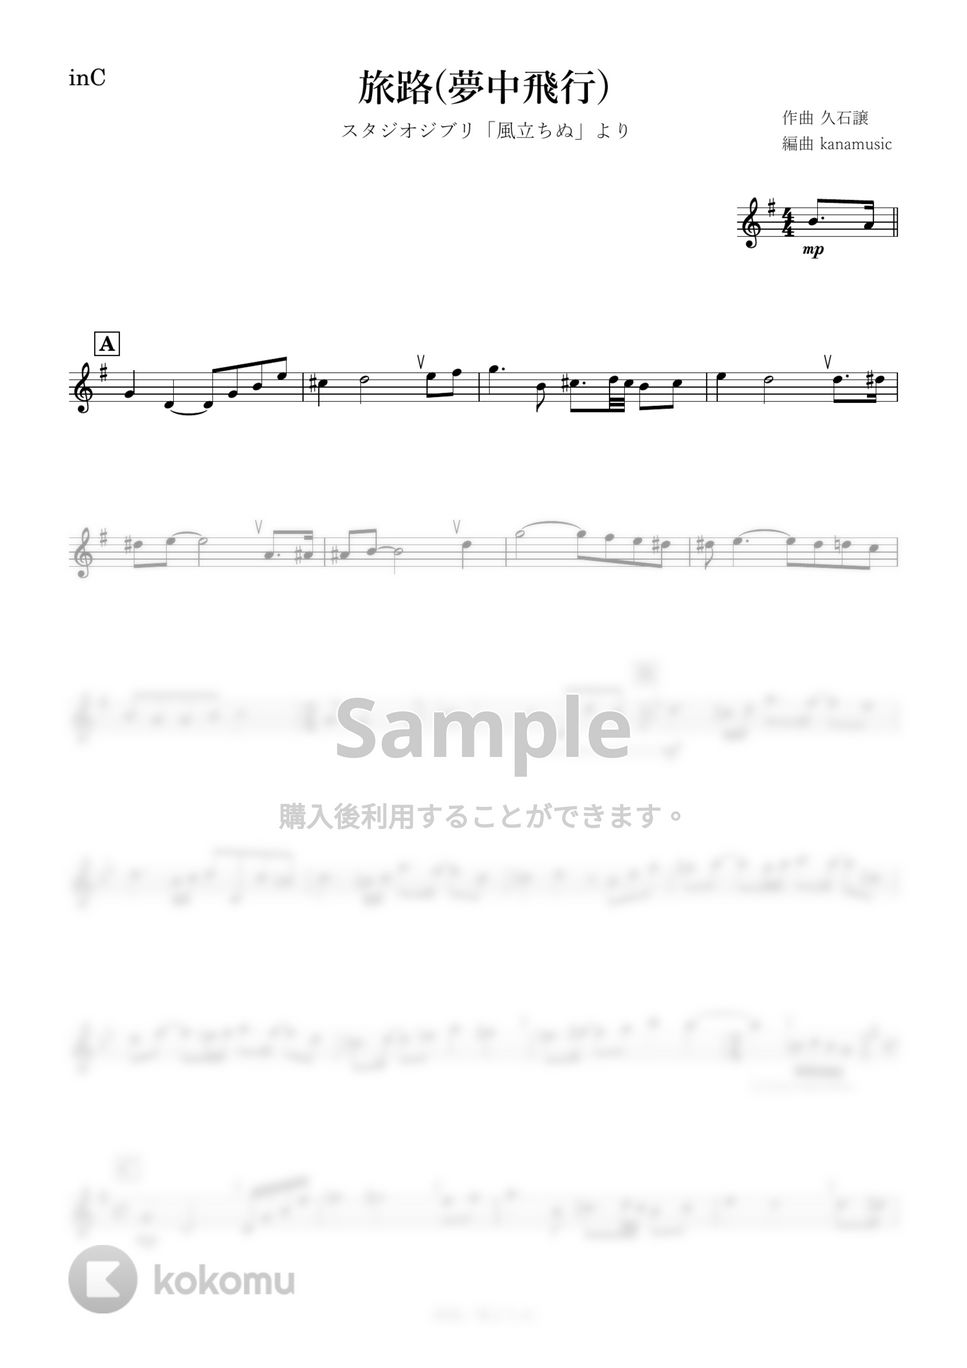 風立ちぬ - 旅路 (C) by kanamusic